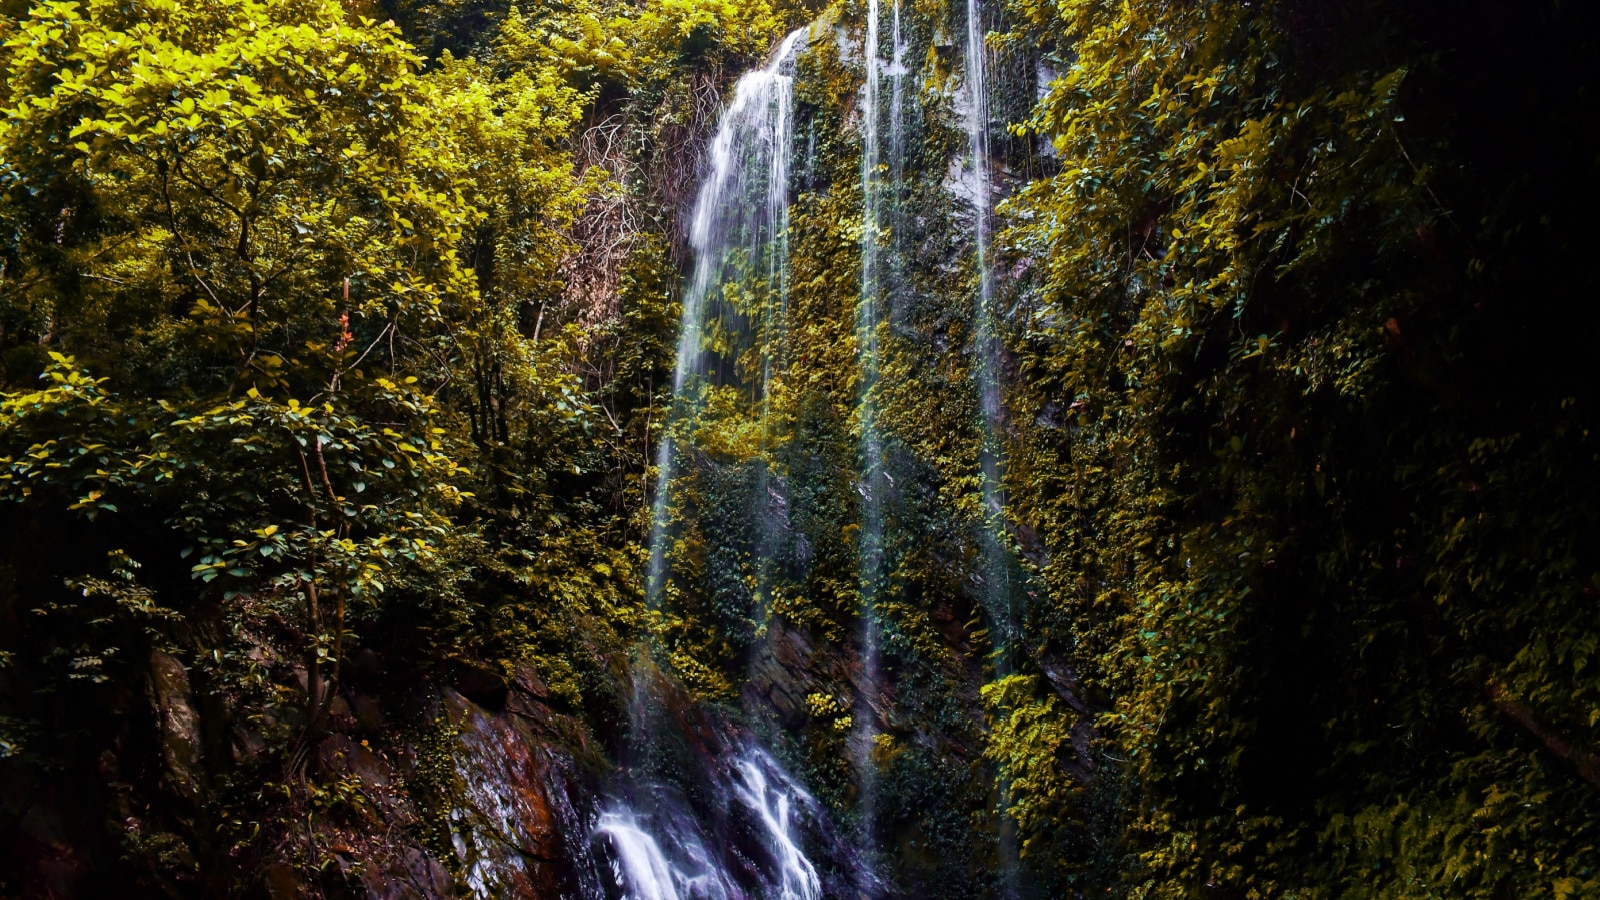 Endearing and Beautiful waterfall scene in Olumirin waterfall, Erin Ijesha. April 30, 2022.